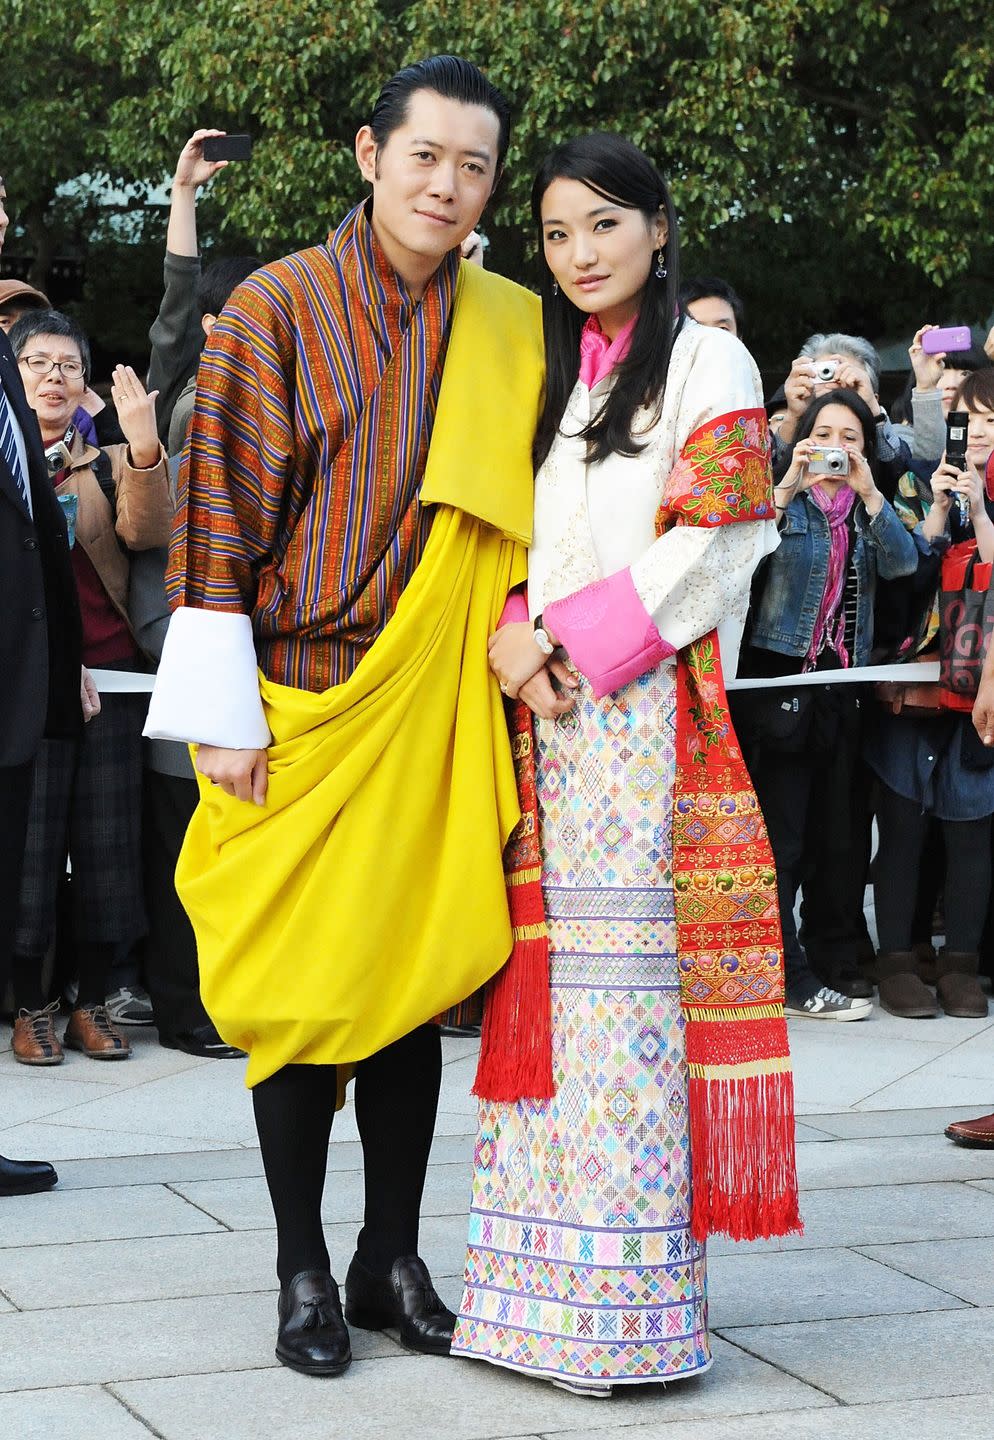 king and queen of bhutan visit japan